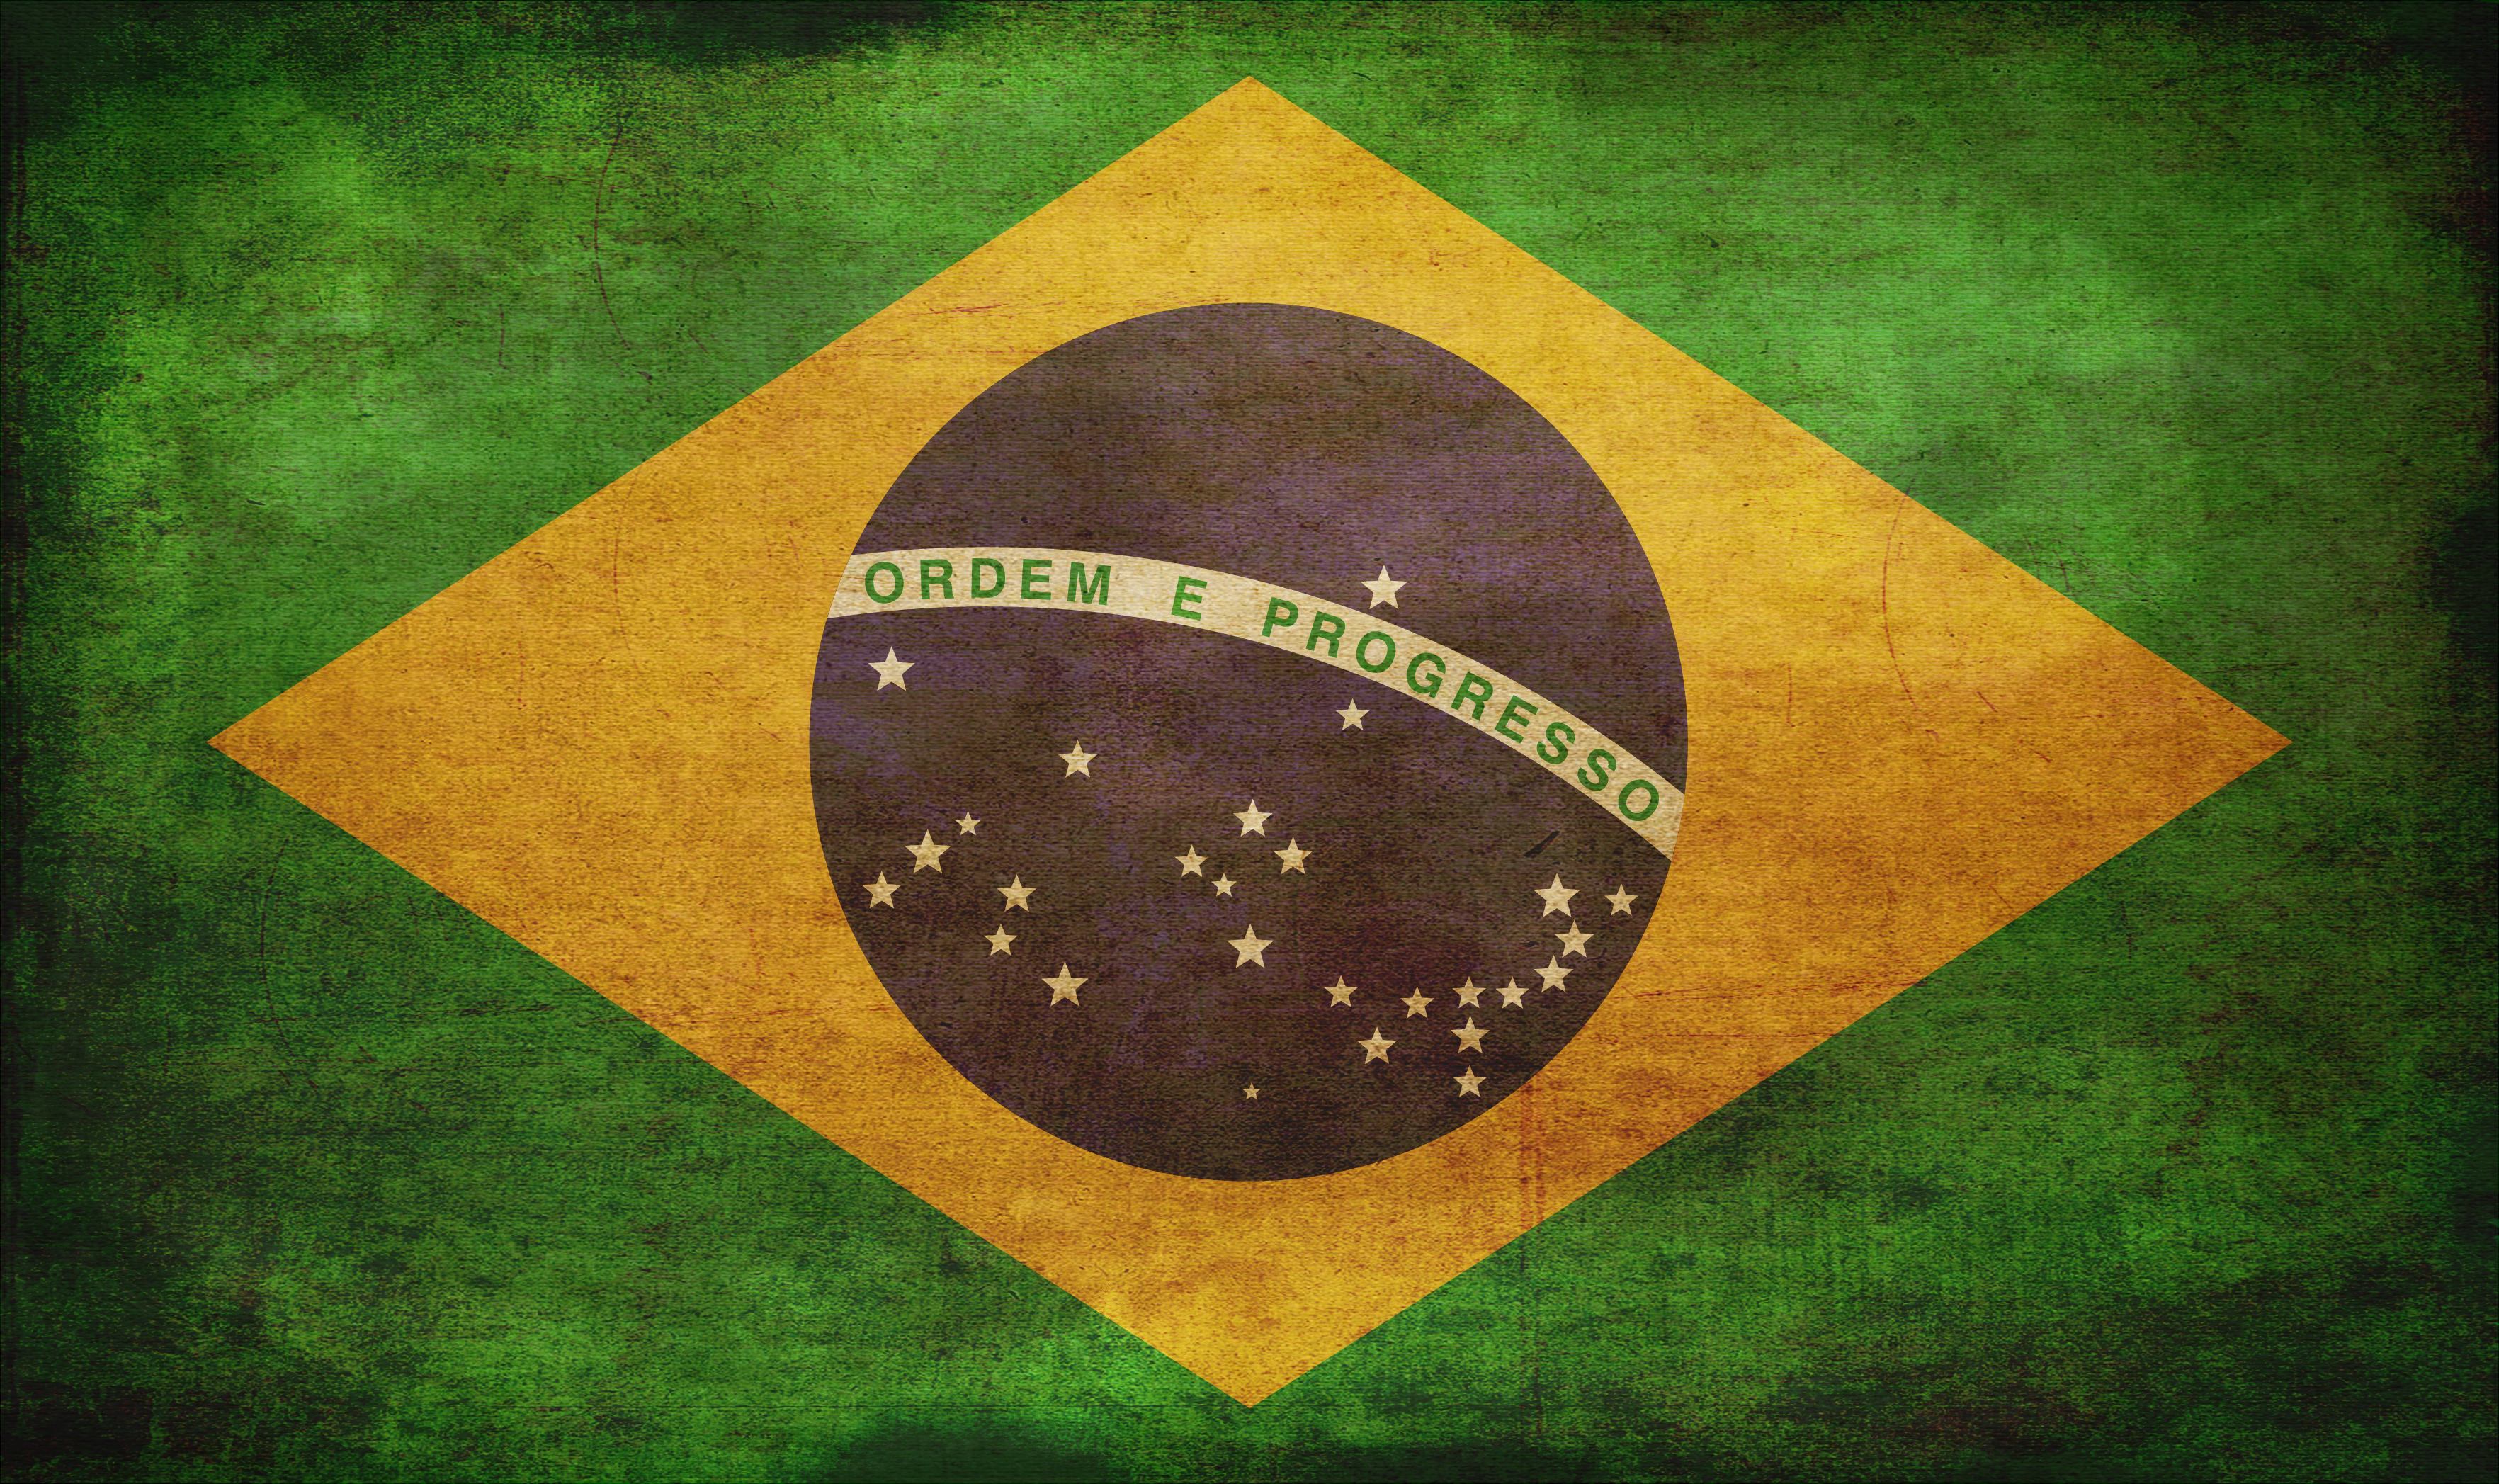 デスクトップ上の952006壁紙とブラジルの国旗画像。 PCにスクリーンセーバーを無料でダウンロード